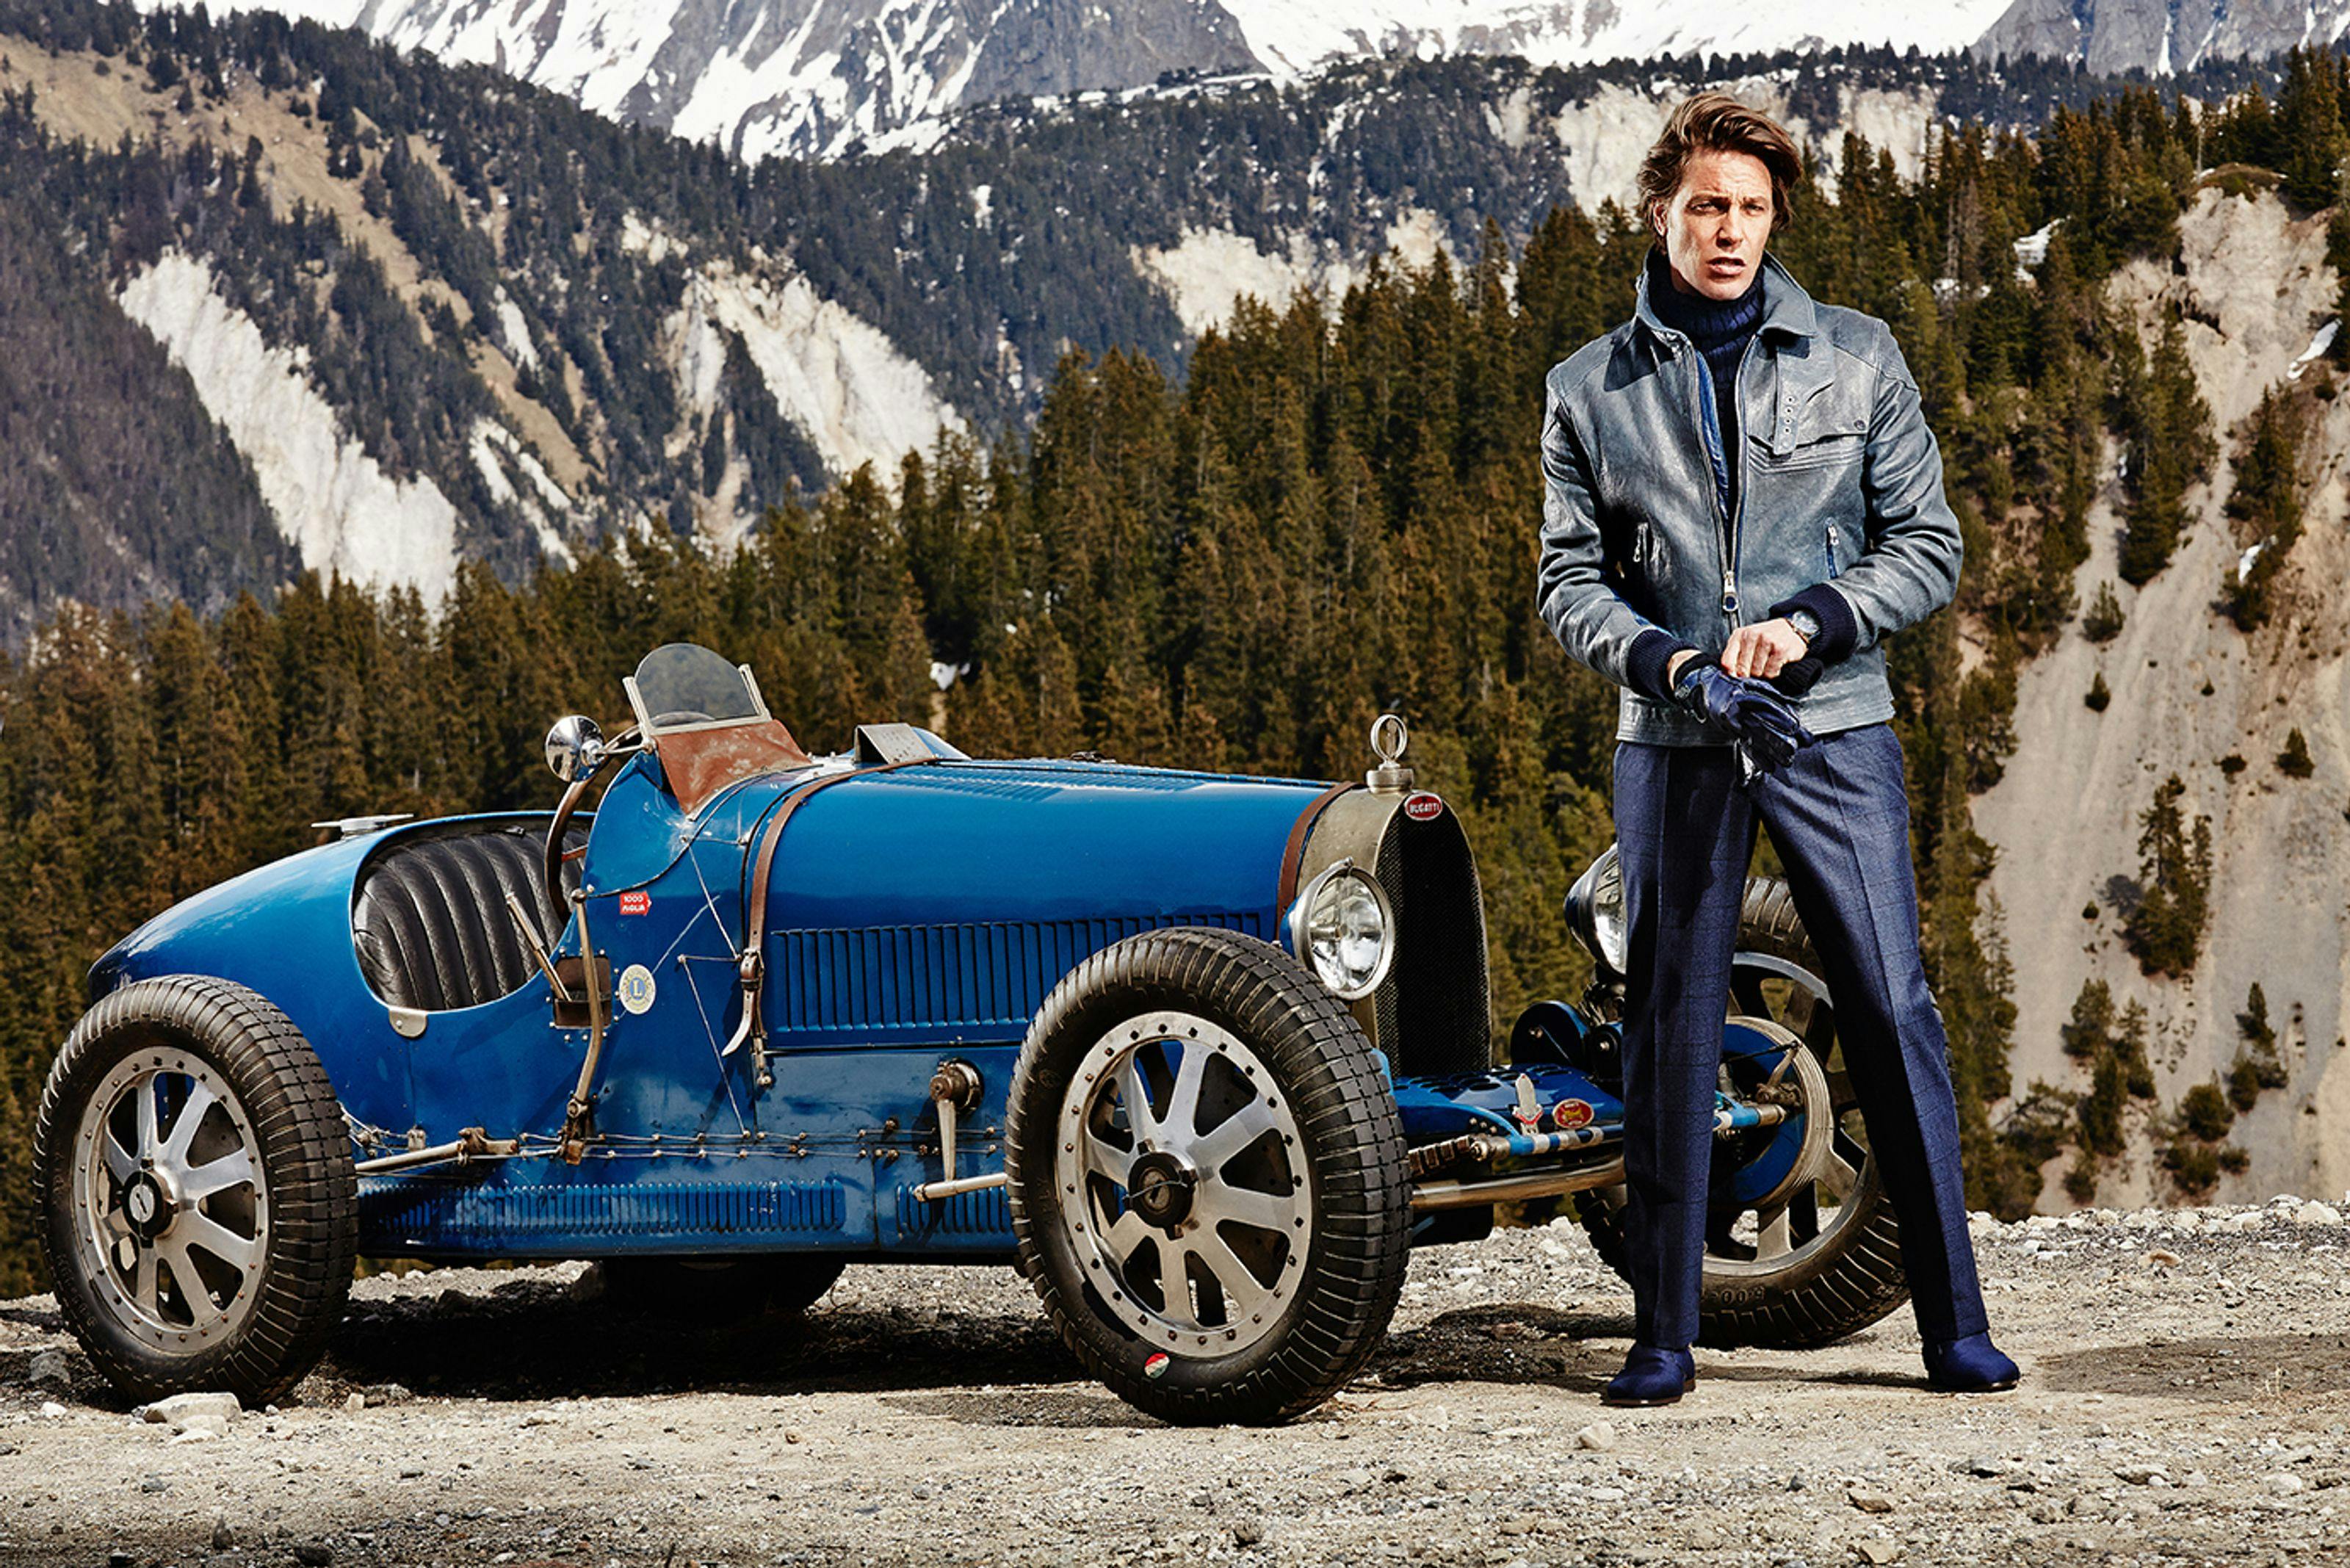 Bugatti präsentiert neue Anzeigenkampagne für seine „EB – Ettore Bugatti“ Herbst/Winter-Kollektion 2014/15